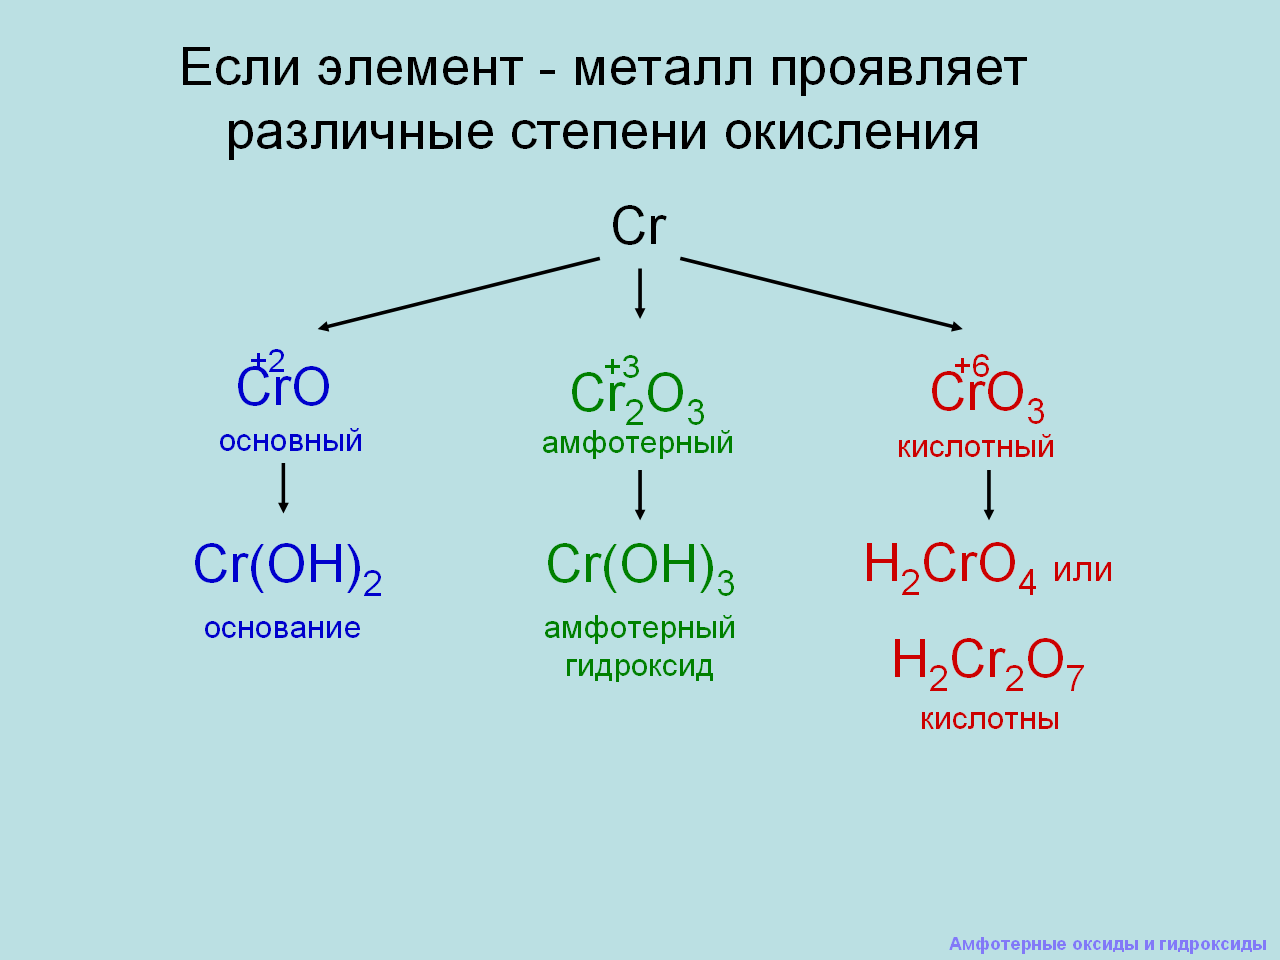 Какой из элементов может образовать амфотерный оксид. Амфотерные оксиды и гидроксиды 9 класс объяснение. Химия 9 класс амфотерные оксиды. Амфотерные оксиды и гидроксиды 9 класс химия. Урок химия амфотерные оксиды и гидроксиды.